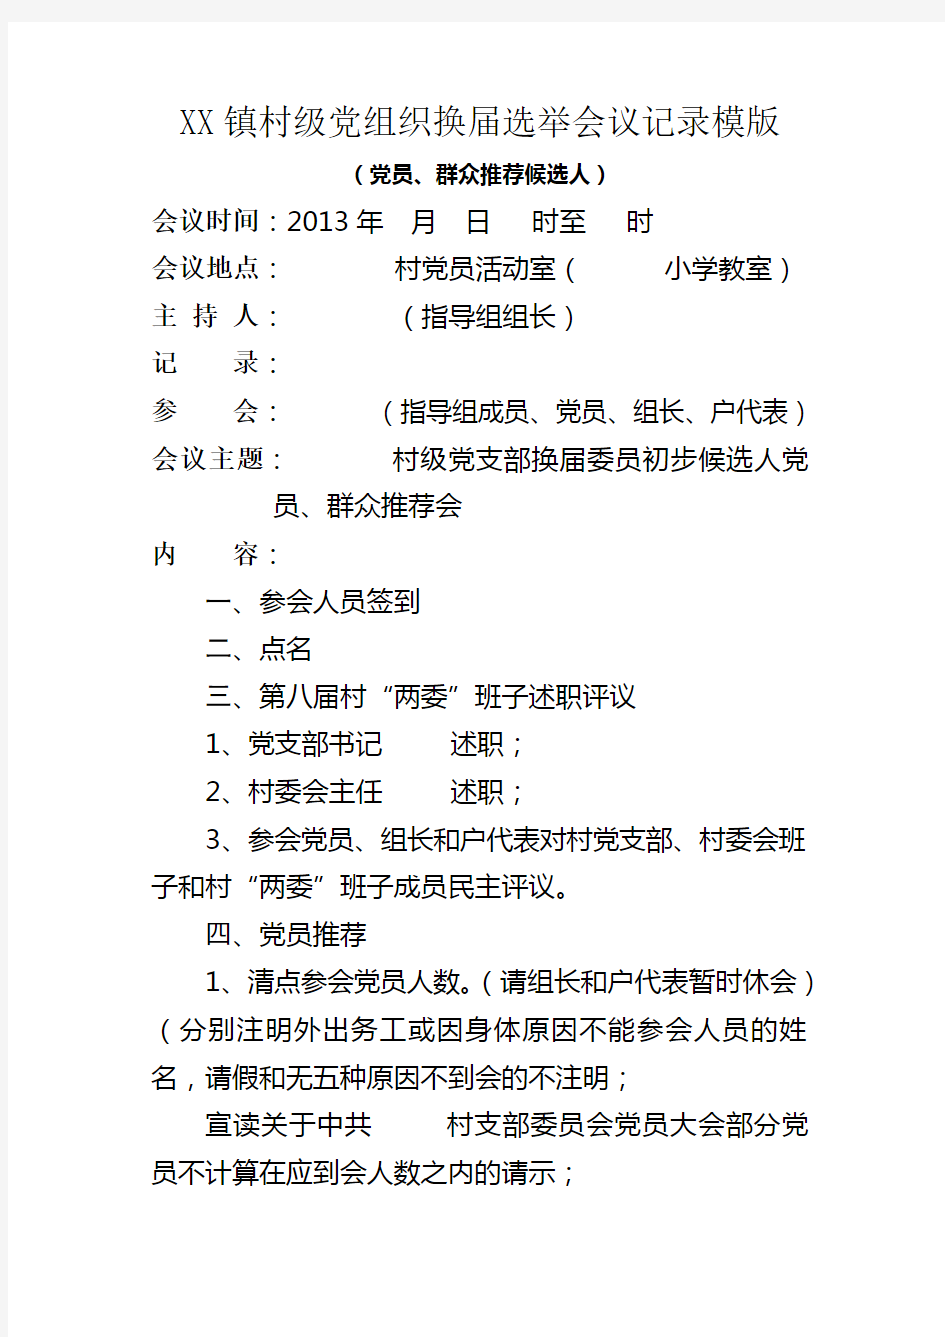 XX镇村级党组织换届选举会议记录模版